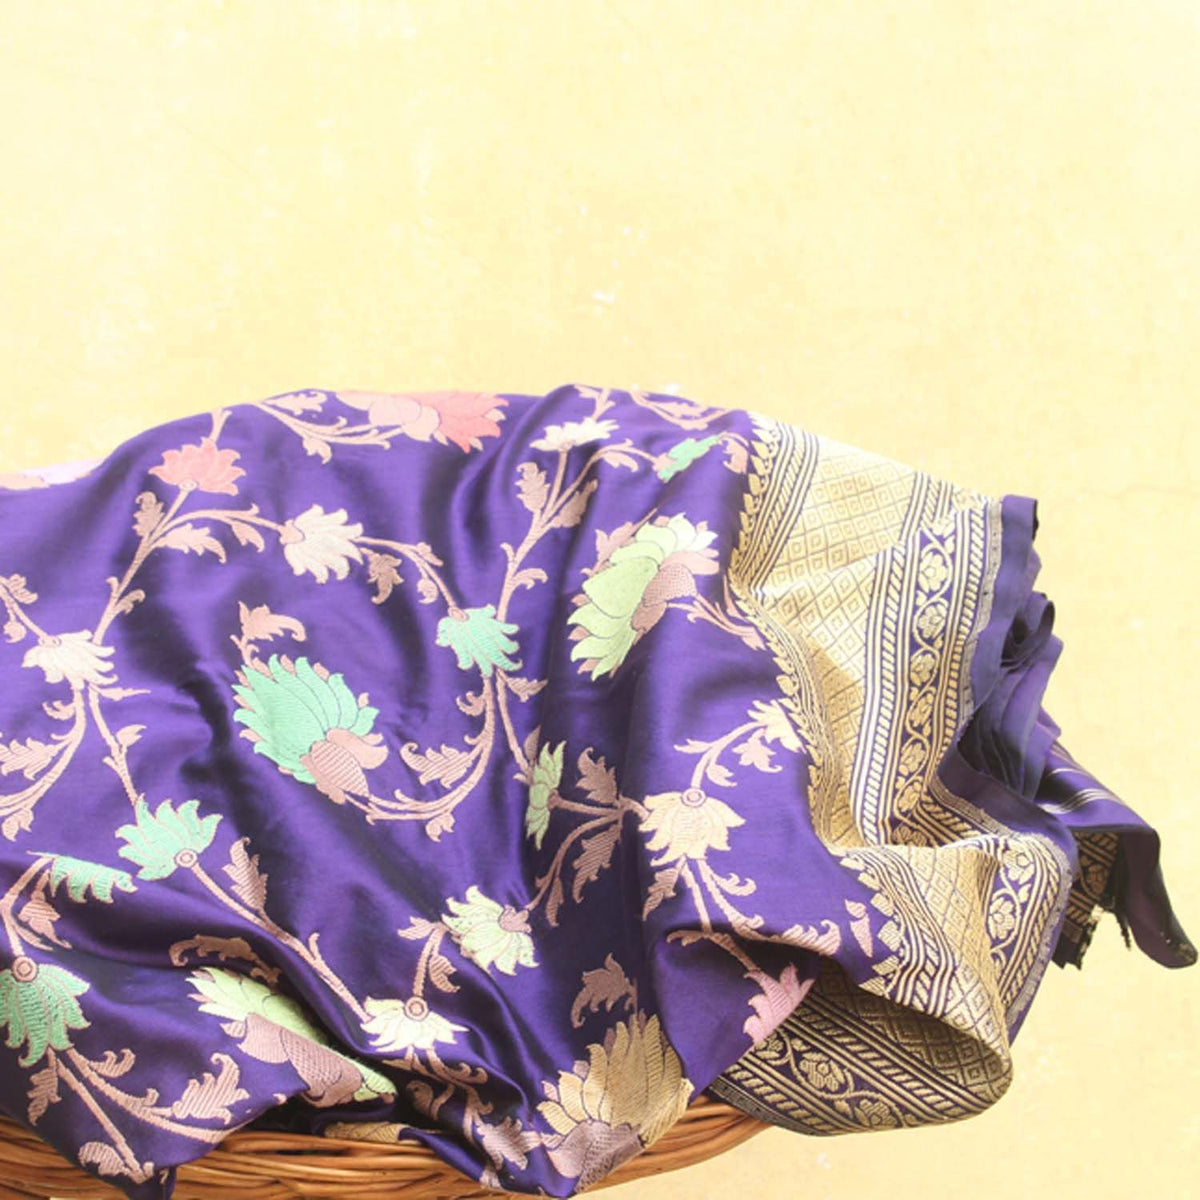 Royal Blue Pure Katan Silk Banarasi Handloom Saree - Tilfi - 1